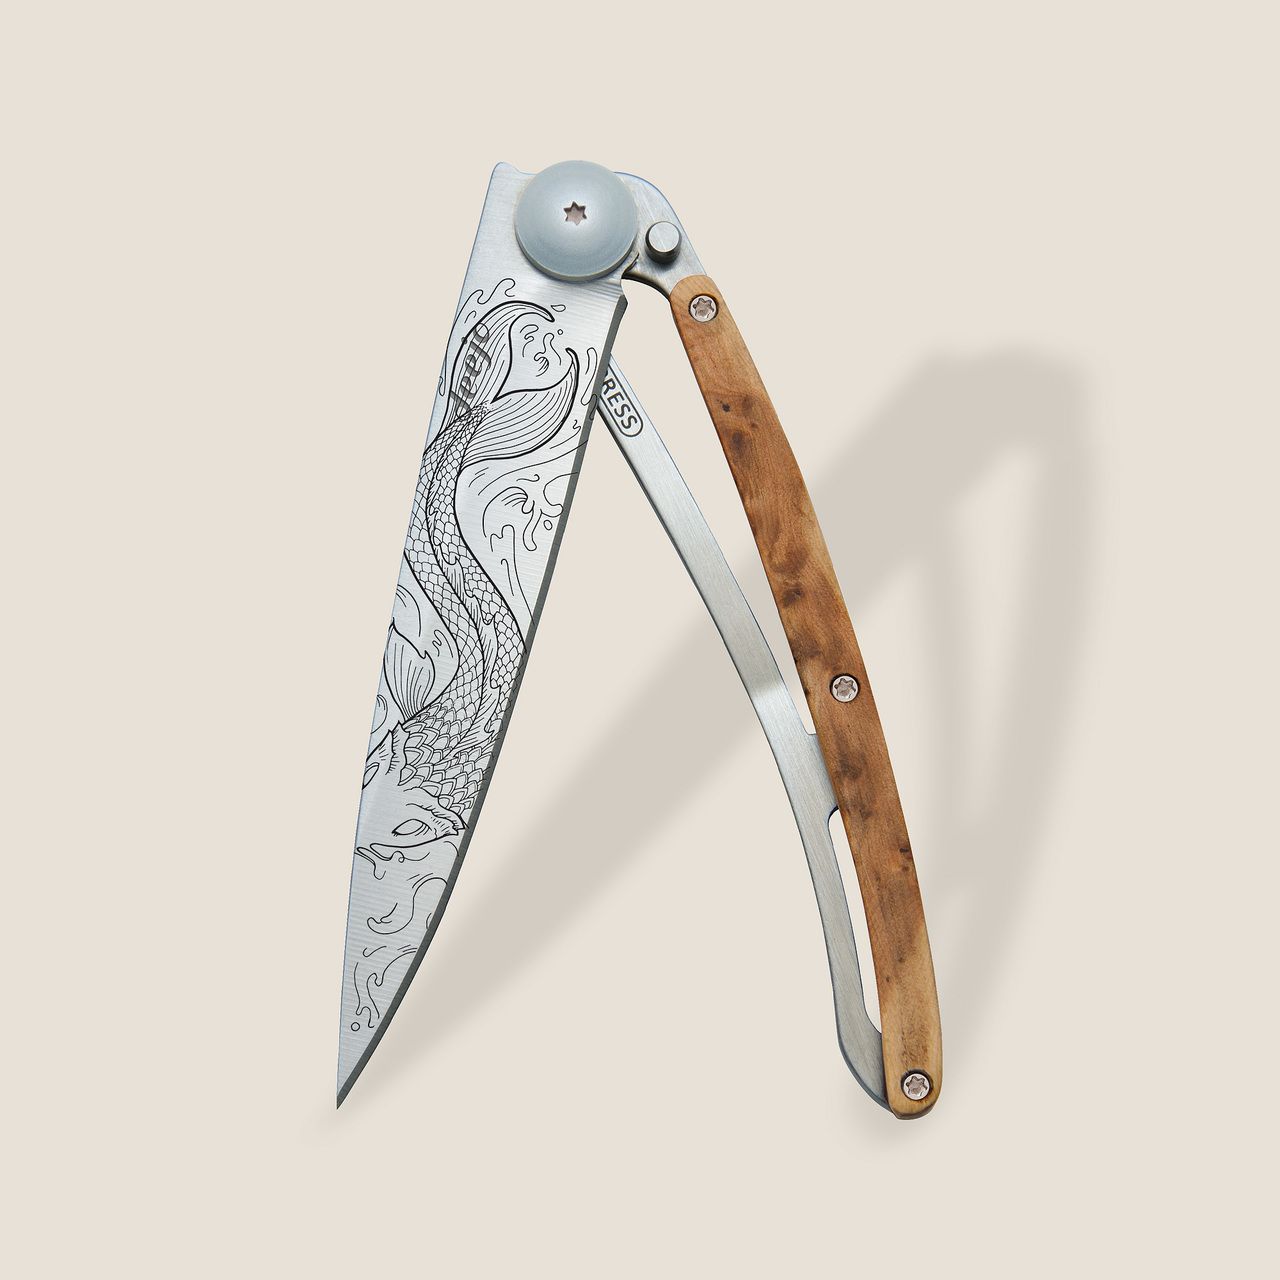 Deejo 37g, Juniper wood / Fish - 37 GR (Standard) - POCKET KNIVES